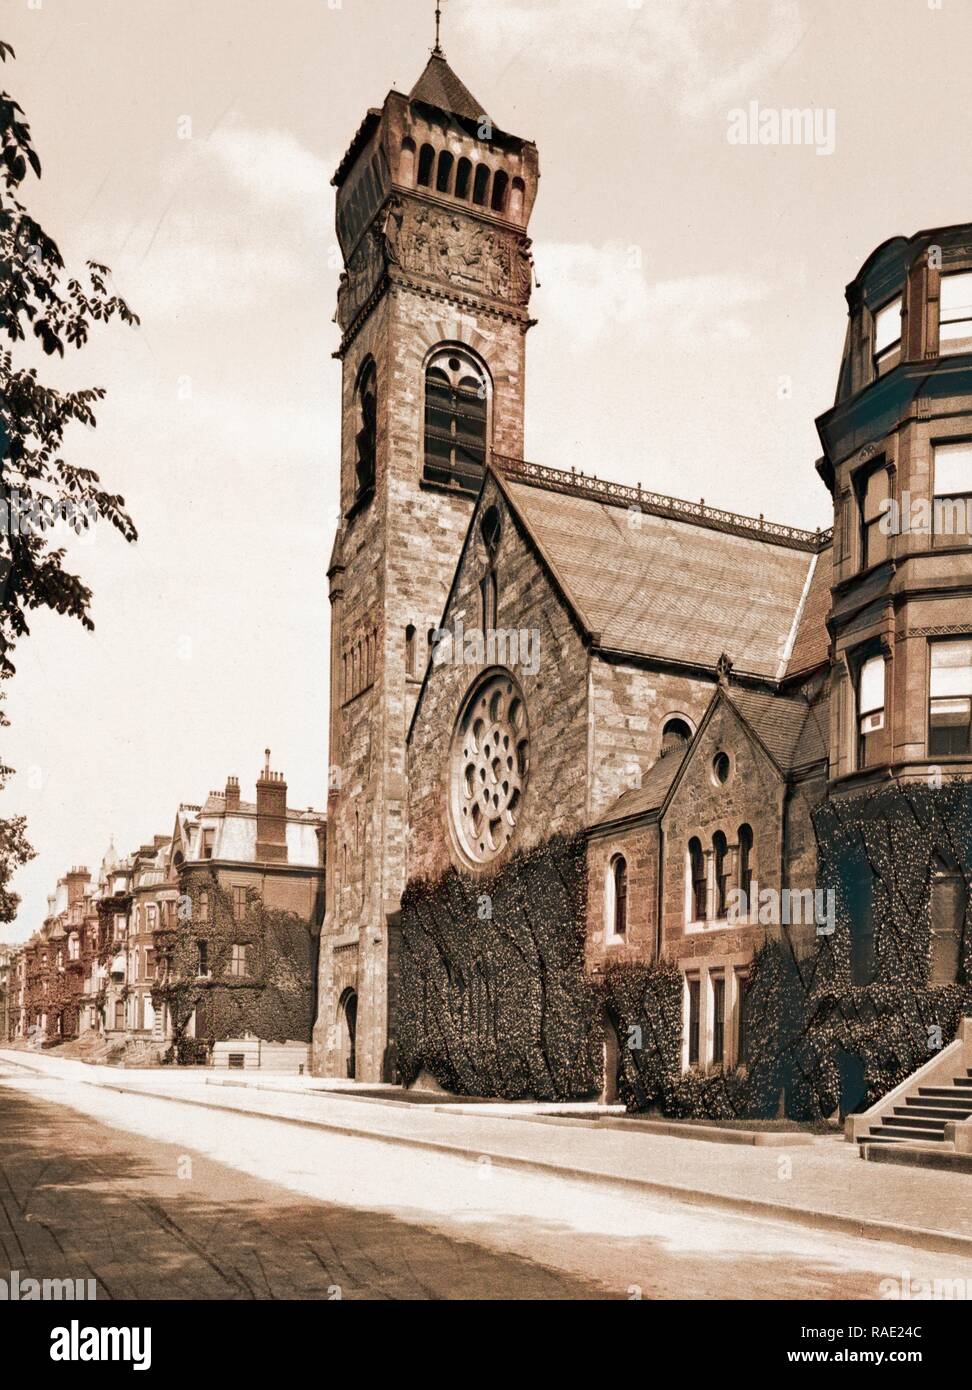 The Manifesto church. Records of the church in brattle square, Boston